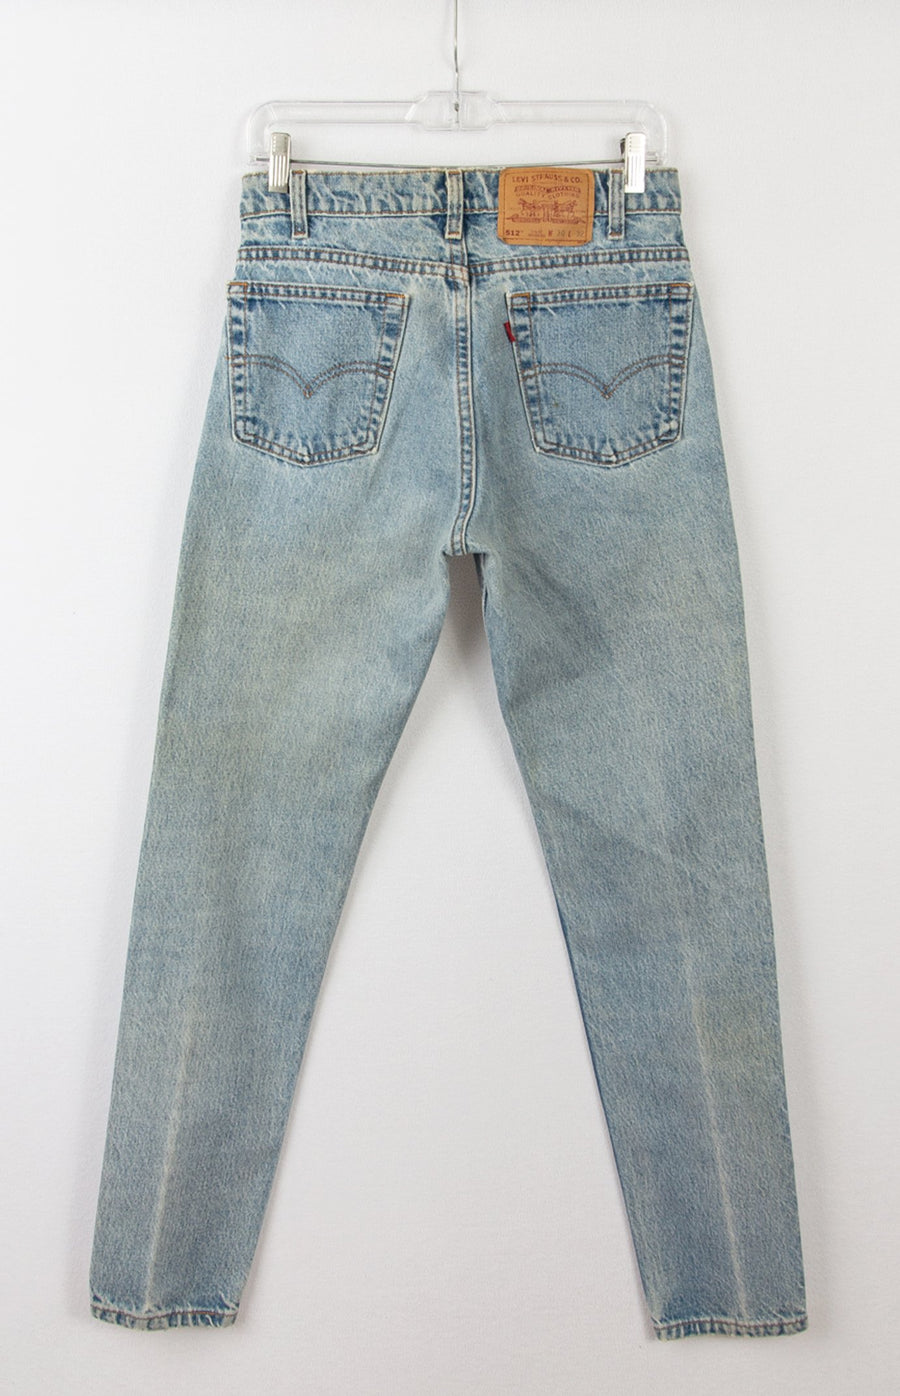 Levi's 512 Jeans | Vintage Levis Jeans | GOAT Vintage